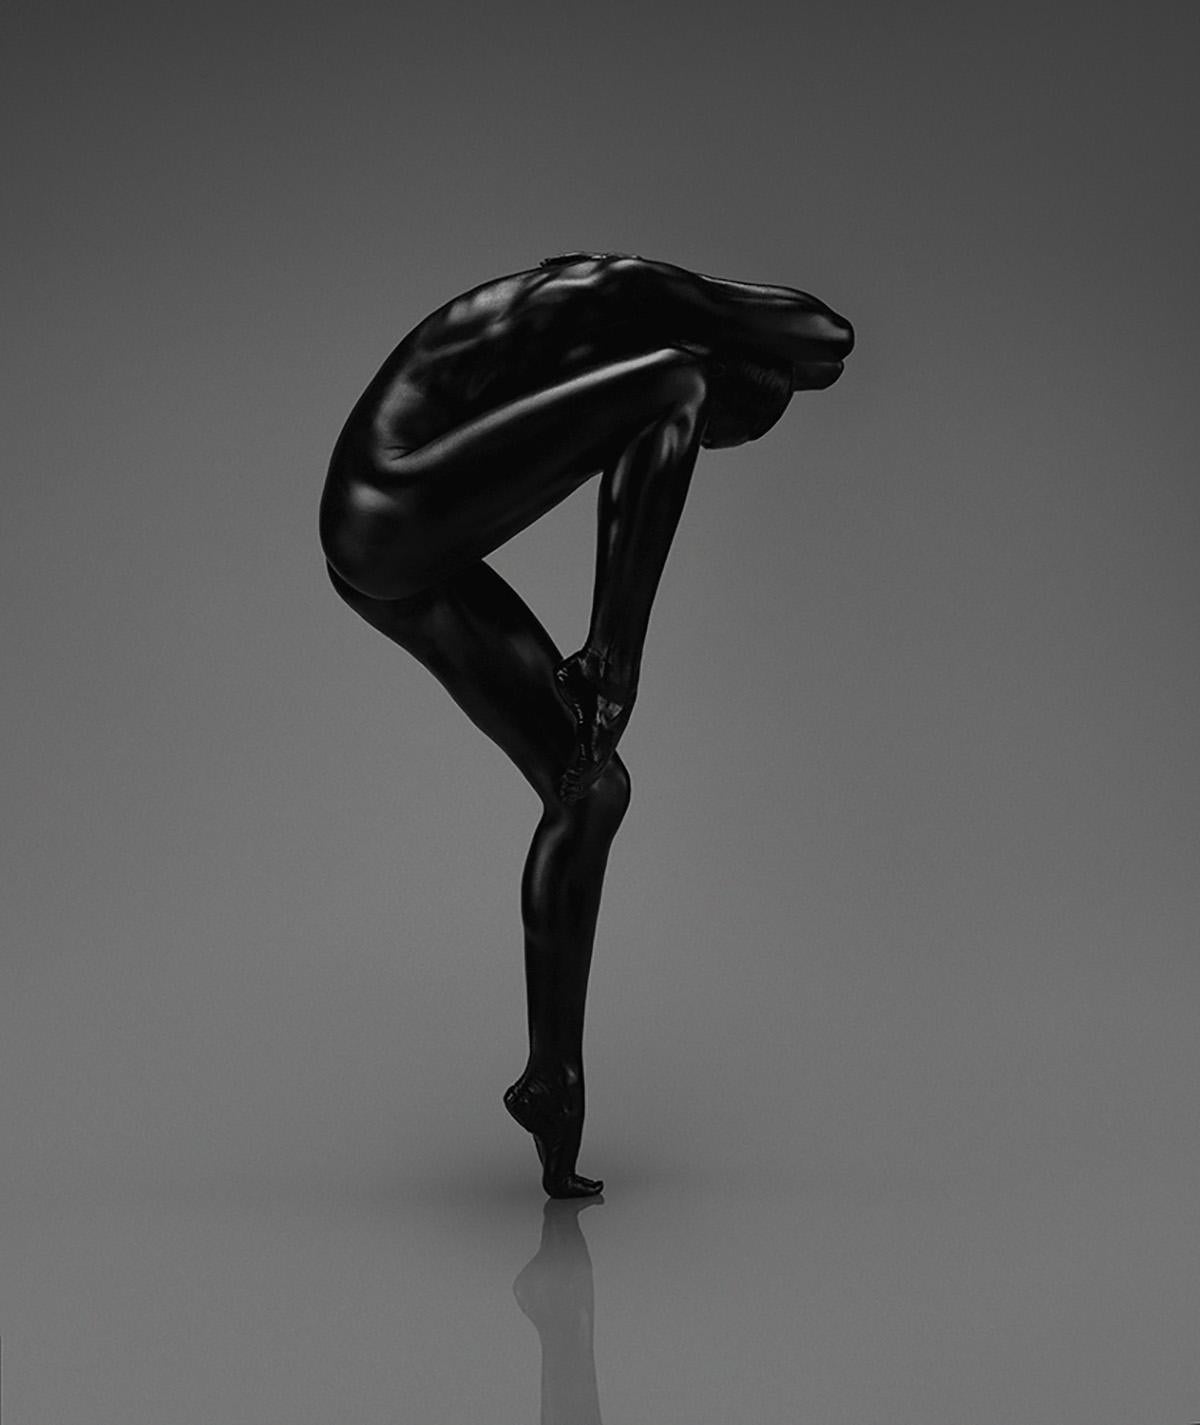 Ohne Titel (Nr. 10) Fotoausgabe von 28 36" x 29" in von Yevgeniy Repiashenko

Jahr, in dem das Foto aufgenommen wurde: 2015

Dieses Kunstwerk ist Teil der Serie "Spirit".
Das Bild zeigt eine eingefrorene Bewegung einer professionellen Ballerina.